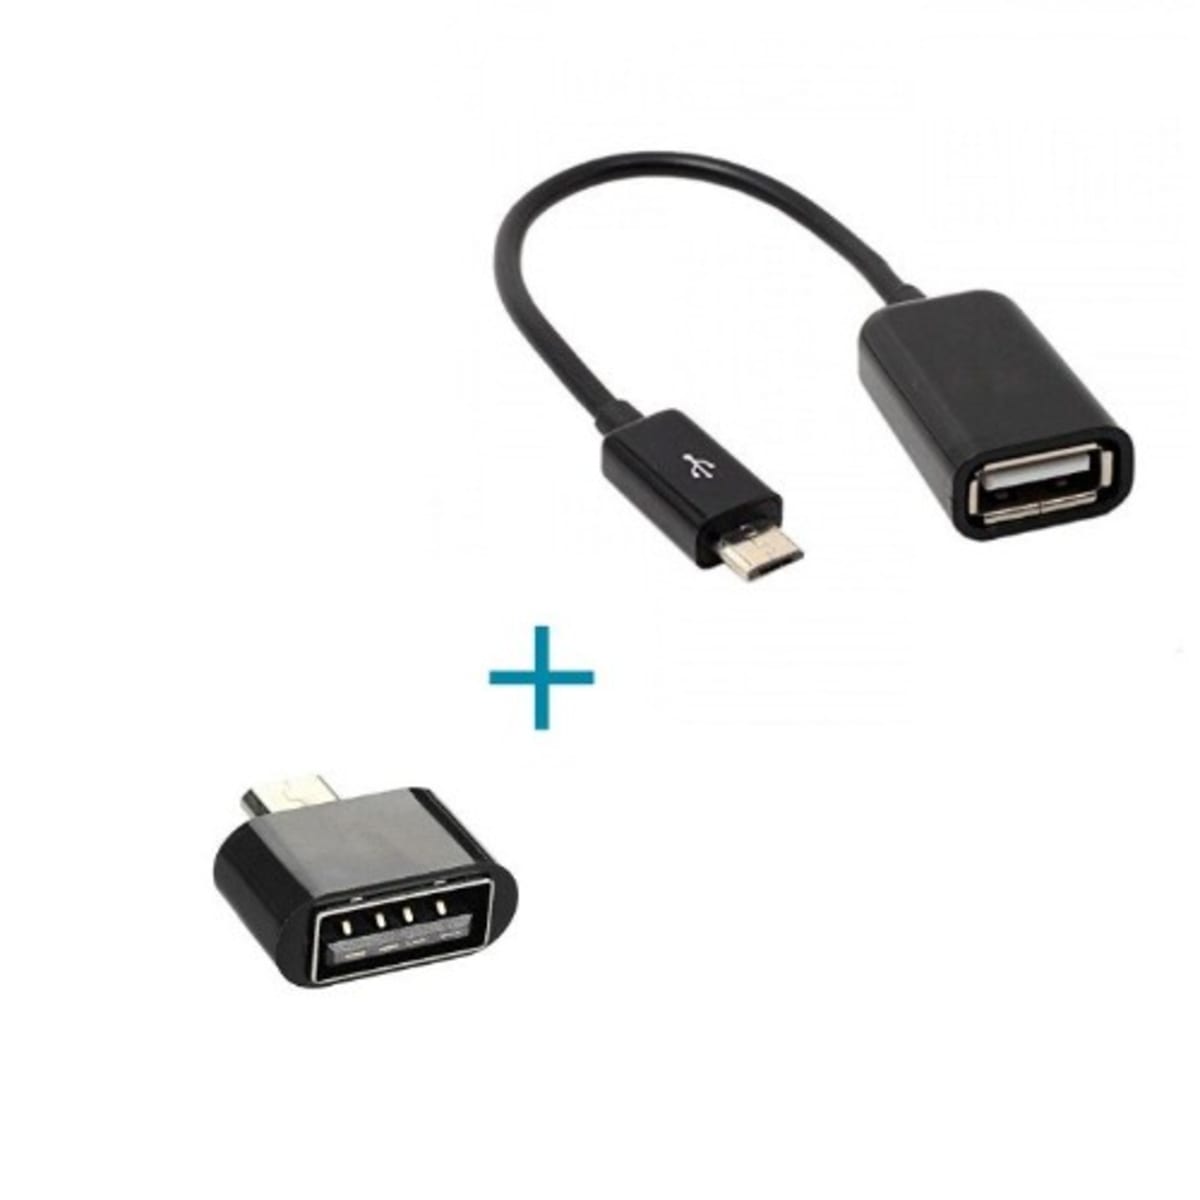 Lav vej ukendt Lim Micro USB OTG Adapter + OTG Cable | Konga Online Shopping